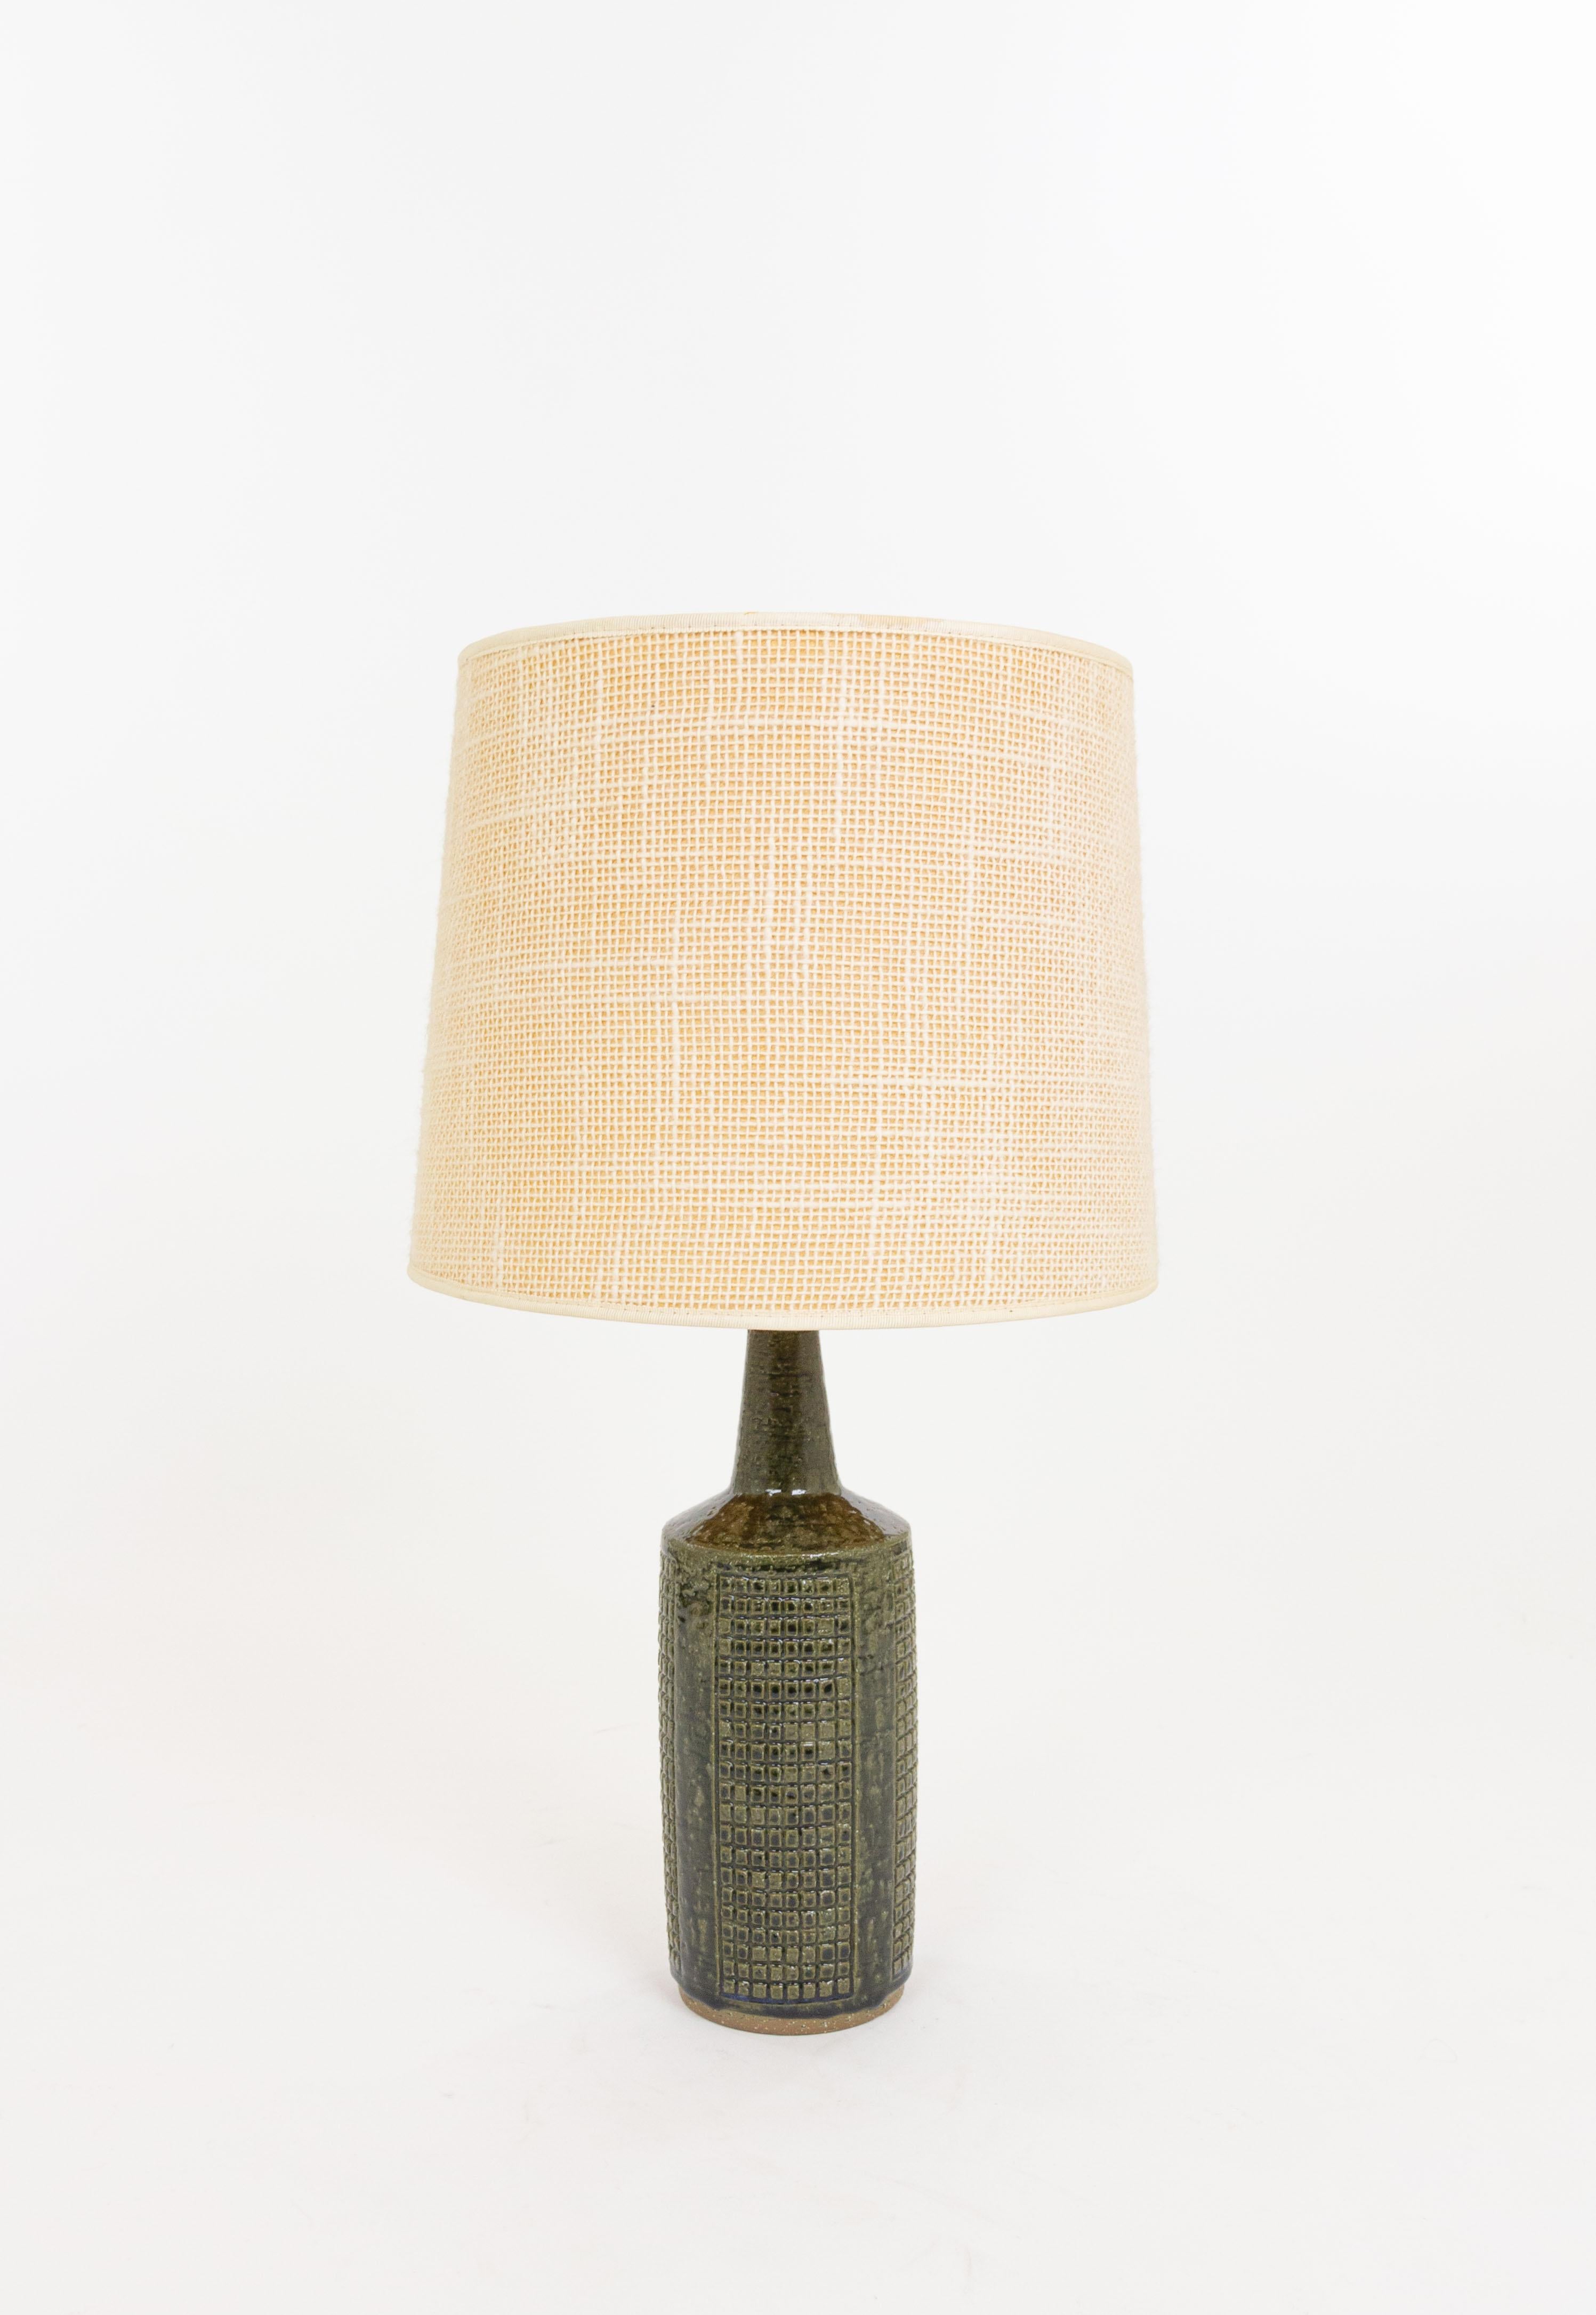 Scandinavian Modern Army Green DL/30 table lamp by Linnemann-Schmidt for Palshus, 1960s For Sale